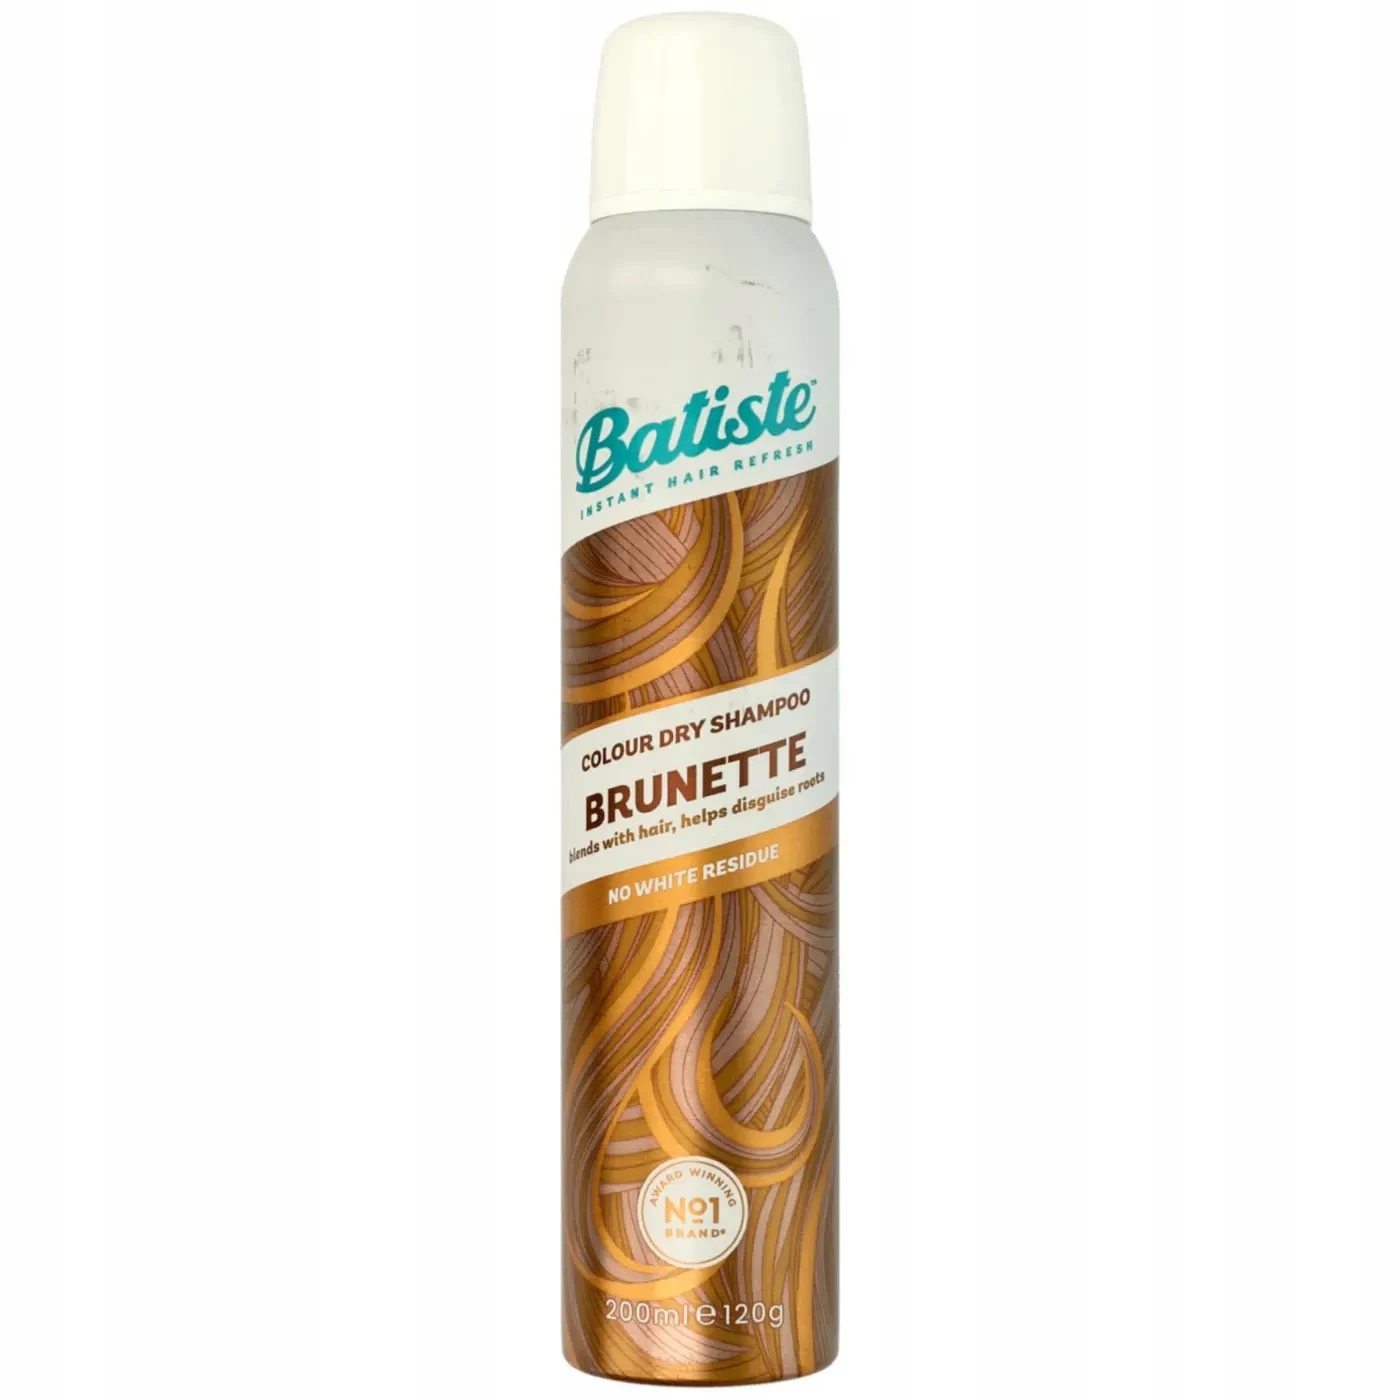 batiste beautiful brunette suchy szampon do włosów dla szatynek natura